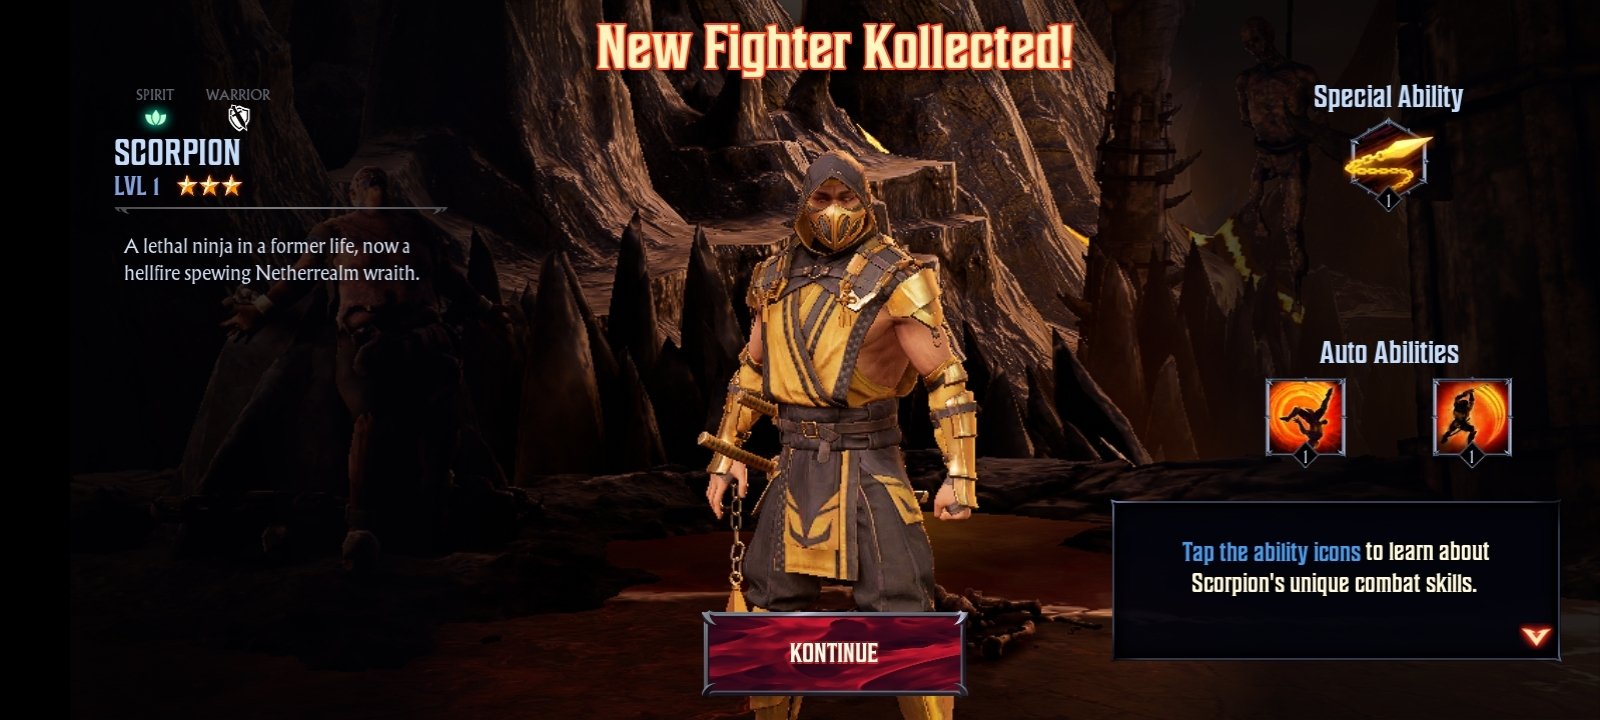 Mortal Kombat: Onslaught 1.1.0 - Скачать Для Android APK Бесплатно